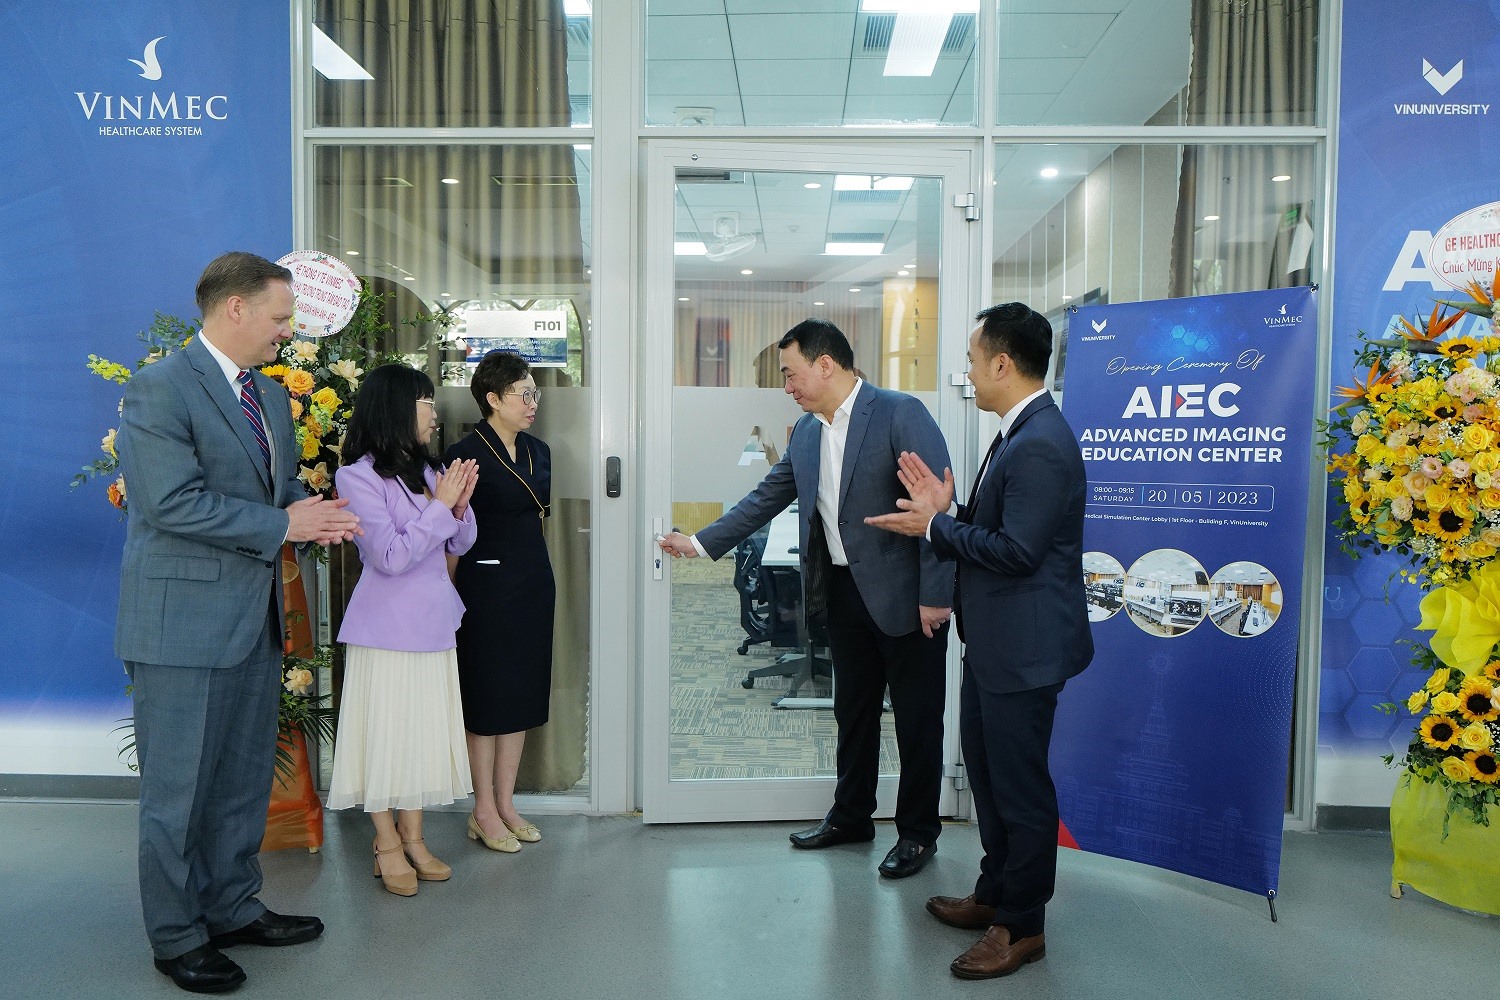 Trung tâm đào tạo nâng cao về Chẩn đoán hình ảnh (AIEC) chính thức khai trương ngày 20.5.2023.